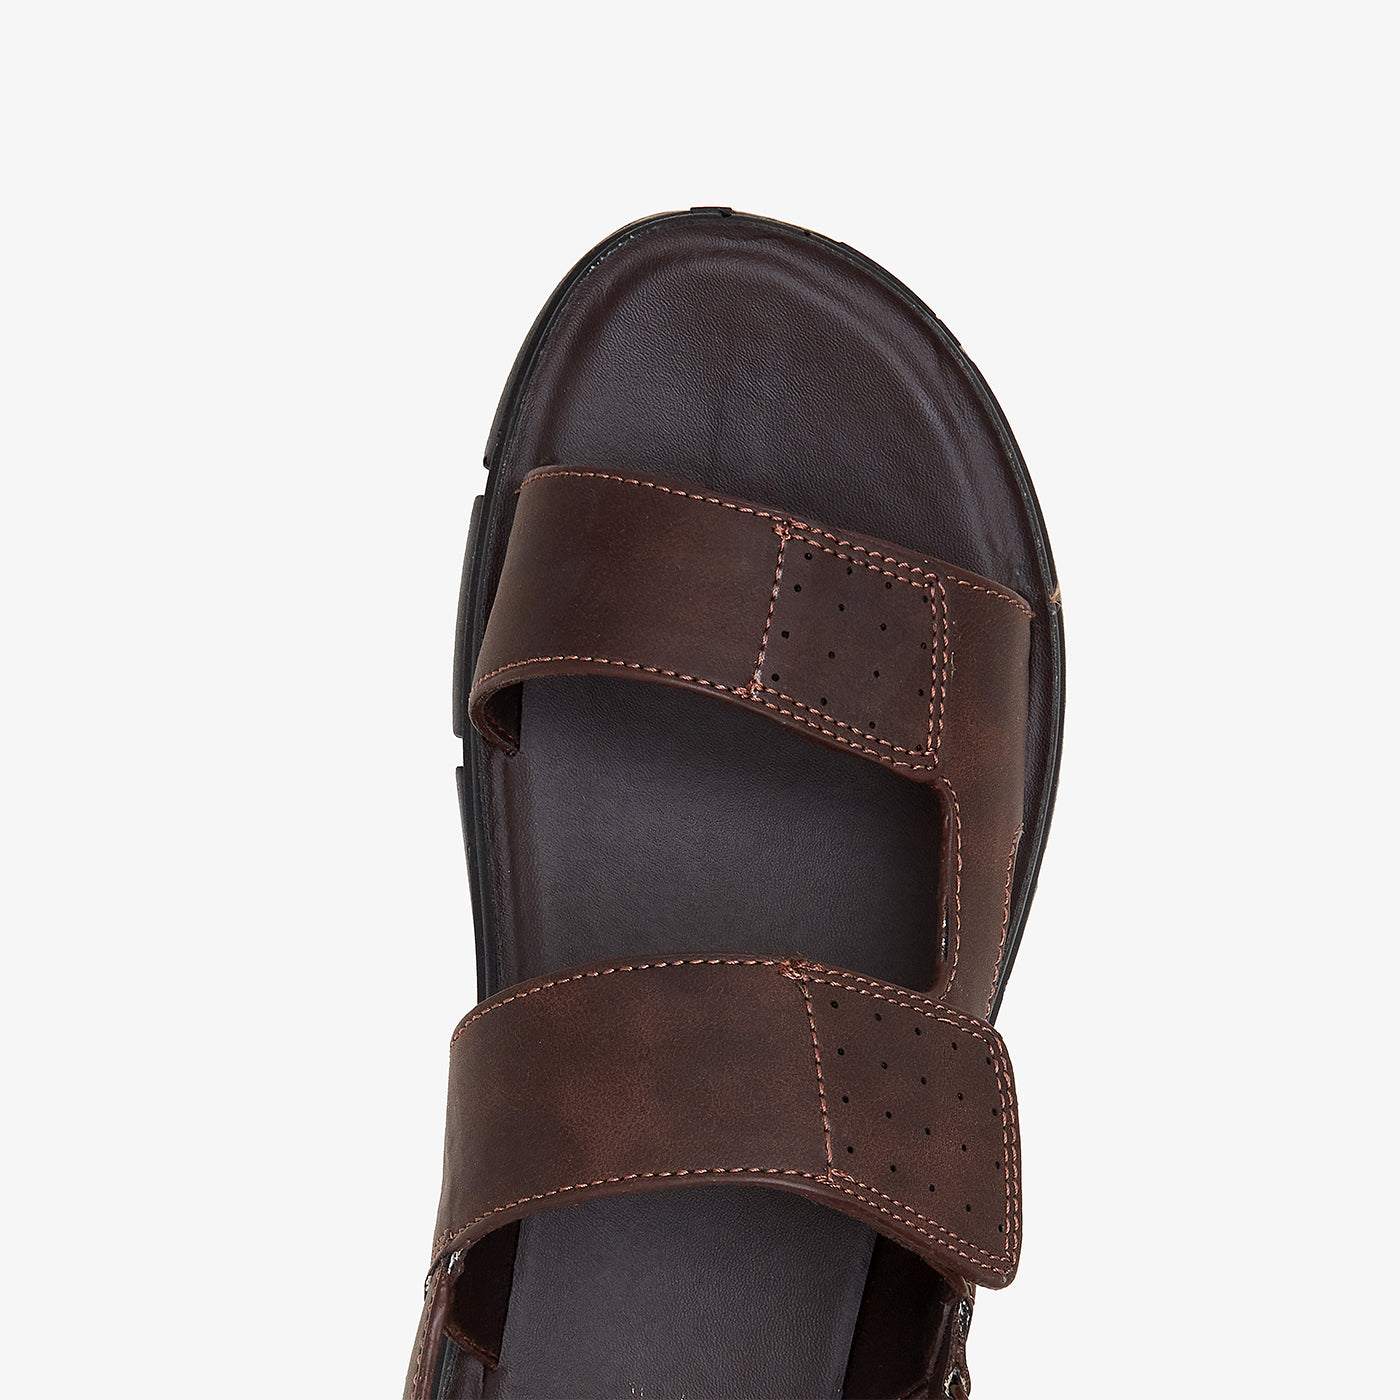 Men's Fashionable Sandals